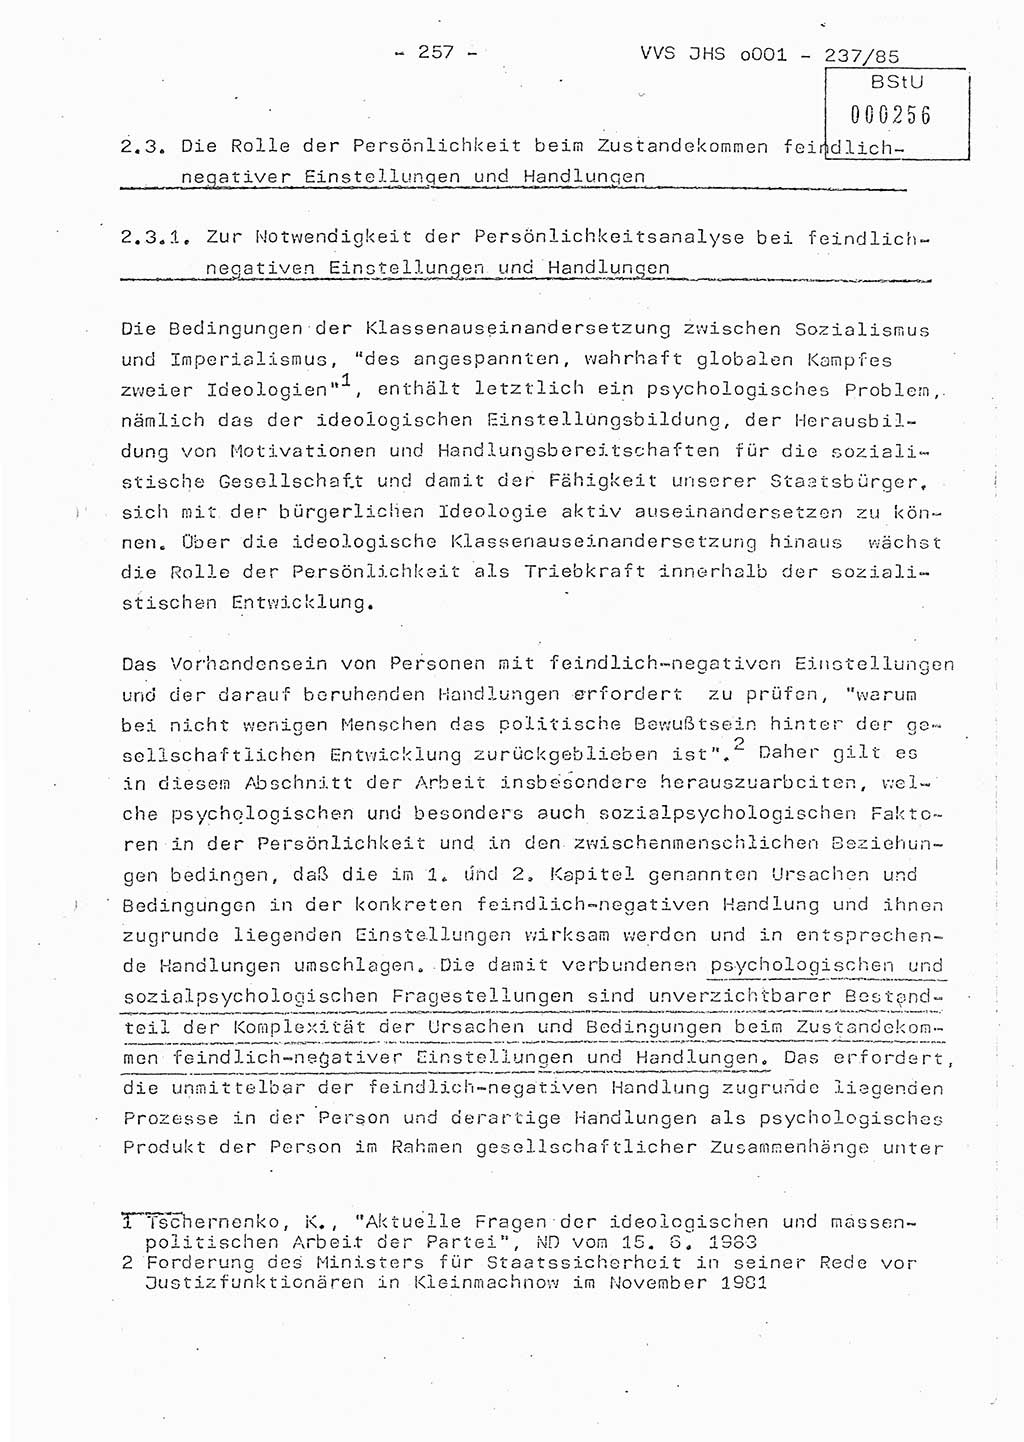 Dissertation Oberstleutnant Peter Jakulski (JHS), Oberstleutnat Christian Rudolph (HA Ⅸ), Major Horst Böttger (ZMD), Major Wolfgang Grüneberg (JHS), Major Albert Meutsch (JHS), Ministerium für Staatssicherheit (MfS) [Deutsche Demokratische Republik (DDR)], Juristische Hochschule (JHS), Vertrauliche Verschlußsache (VVS) o001-237/85, Potsdam 1985, Seite 257 (Diss. MfS DDR JHS VVS o001-237/85 1985, S. 257)